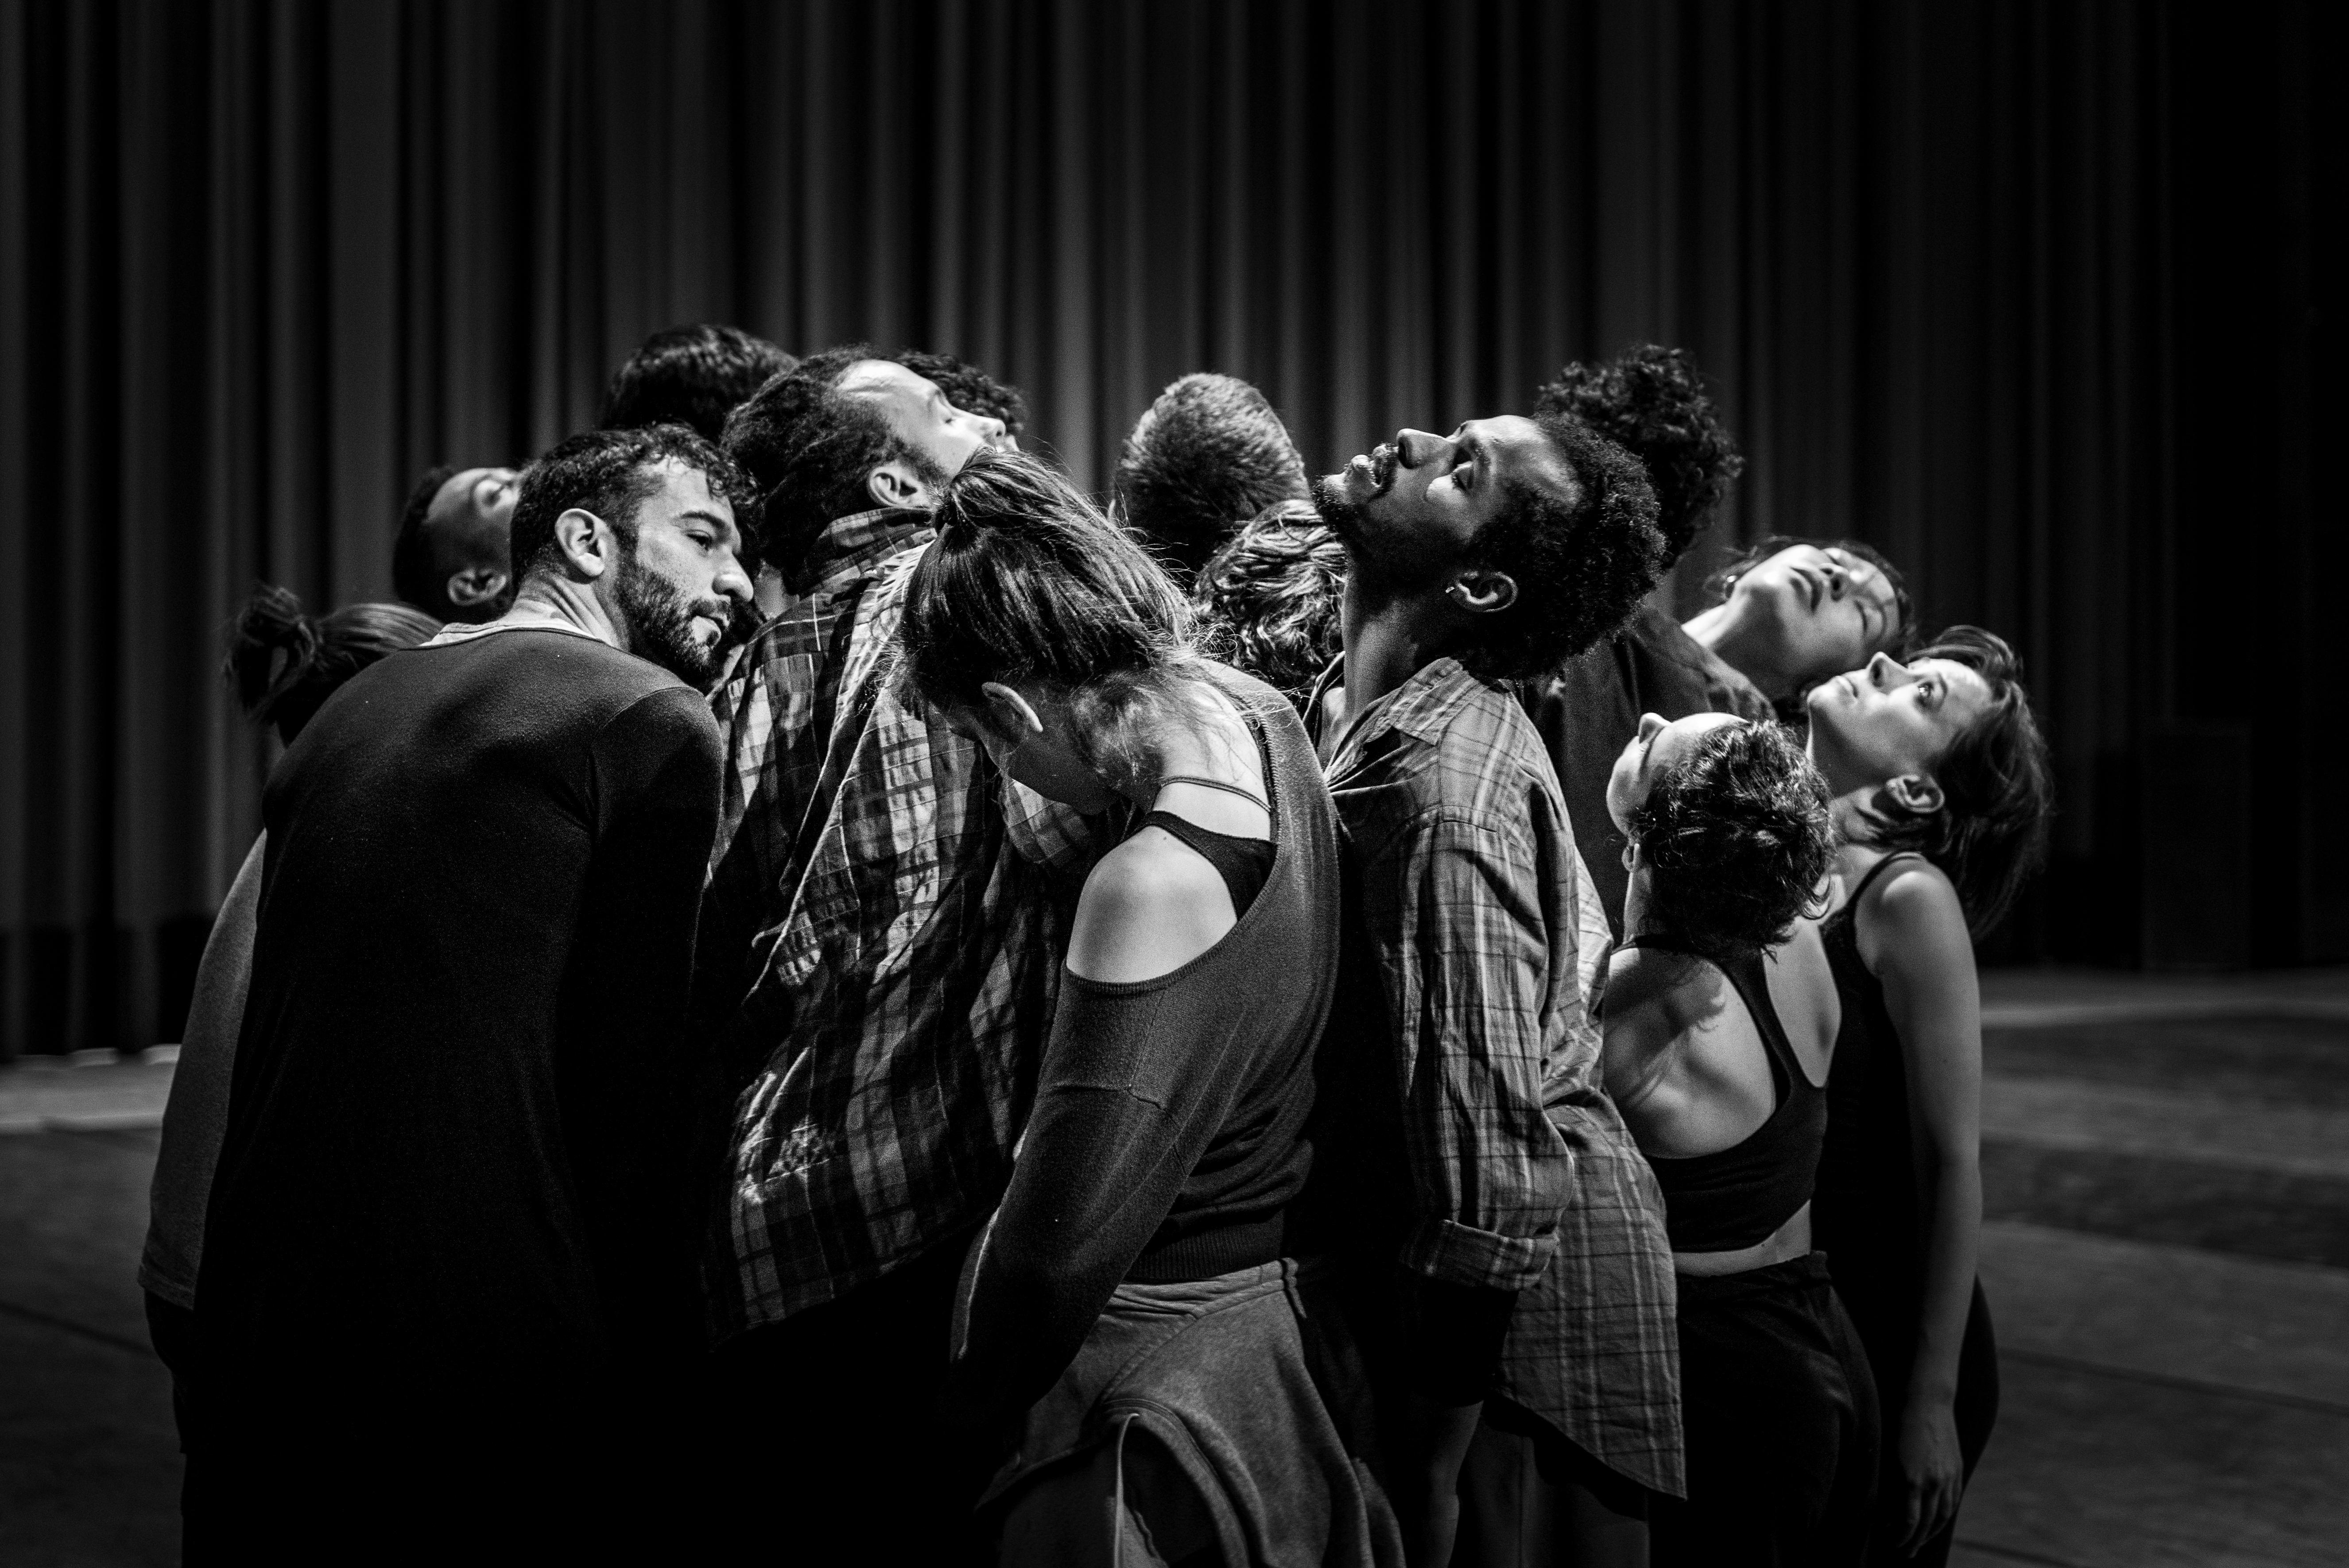  Balé Teatro Guaíra apresenta mostra com coreografias intimistas